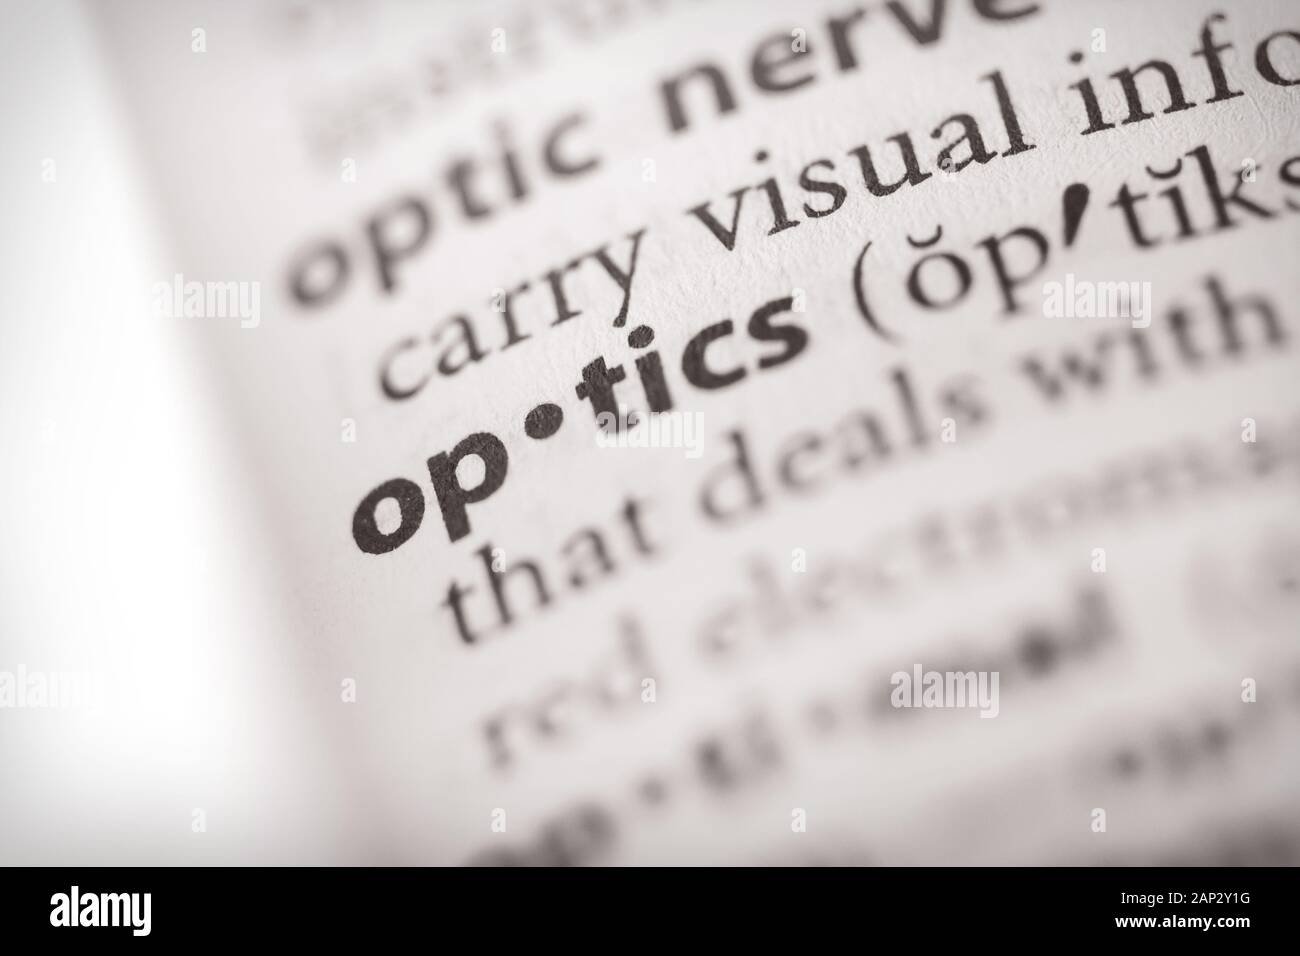 Selektive Fokussierung auf das Wort Optik. Viele weitere Wortfotos in meinem Portfolio. Stockfoto